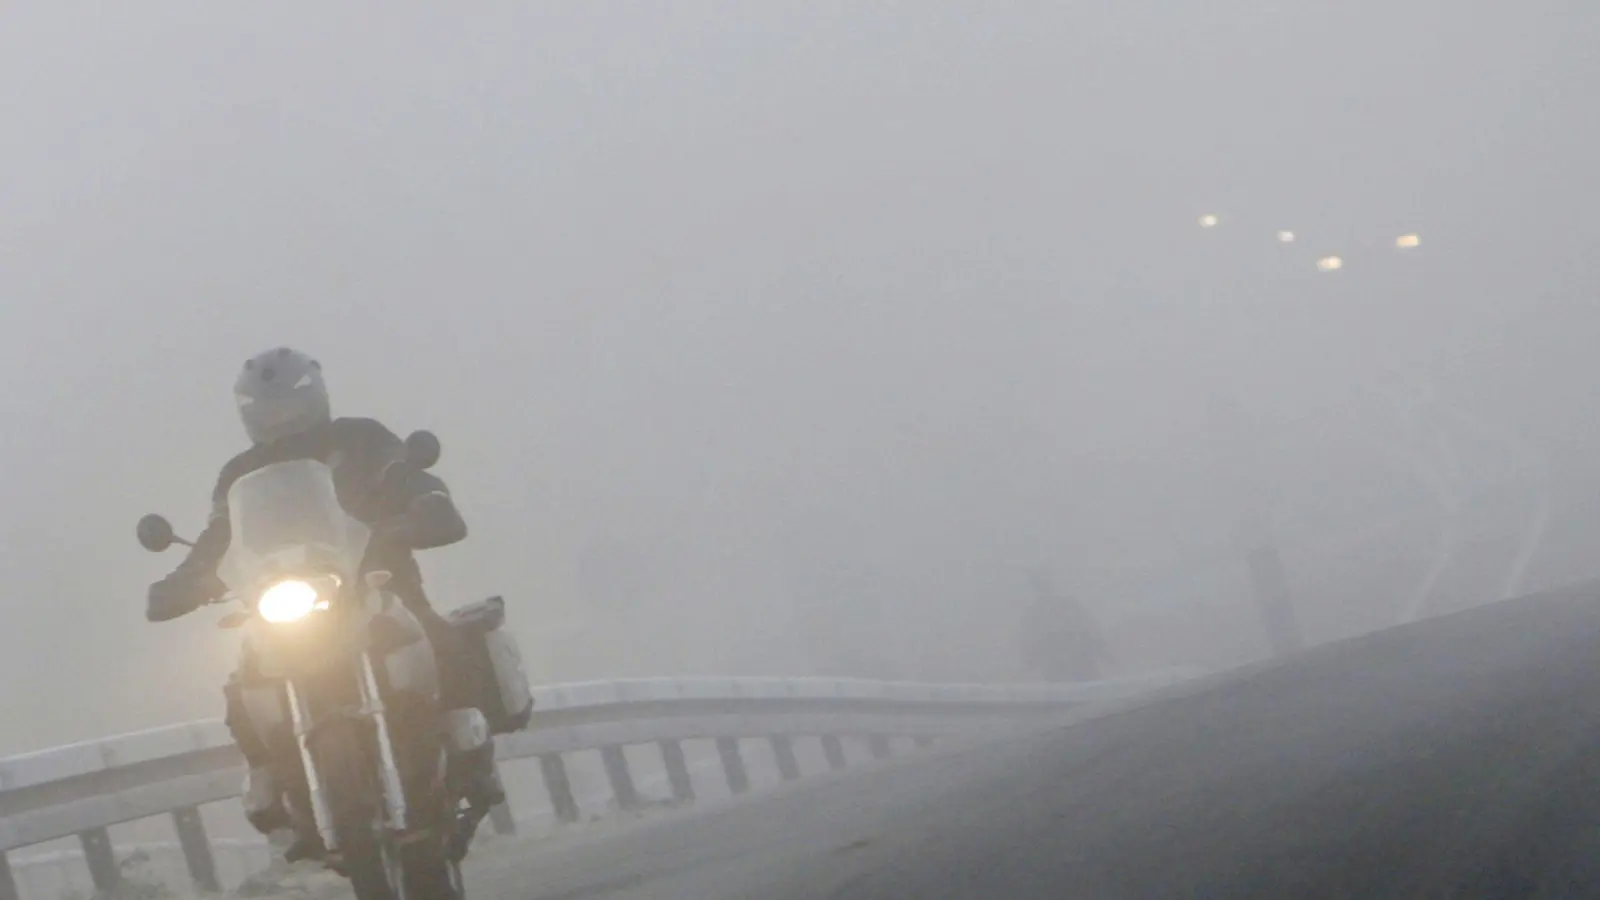 Wer im Herbst noch auf sein Motorrad springt, sollte mit Nebel rechnen - und wissen, wie er am besten reagiert. (Foto: Frank May/dpa/dpa-tmn)